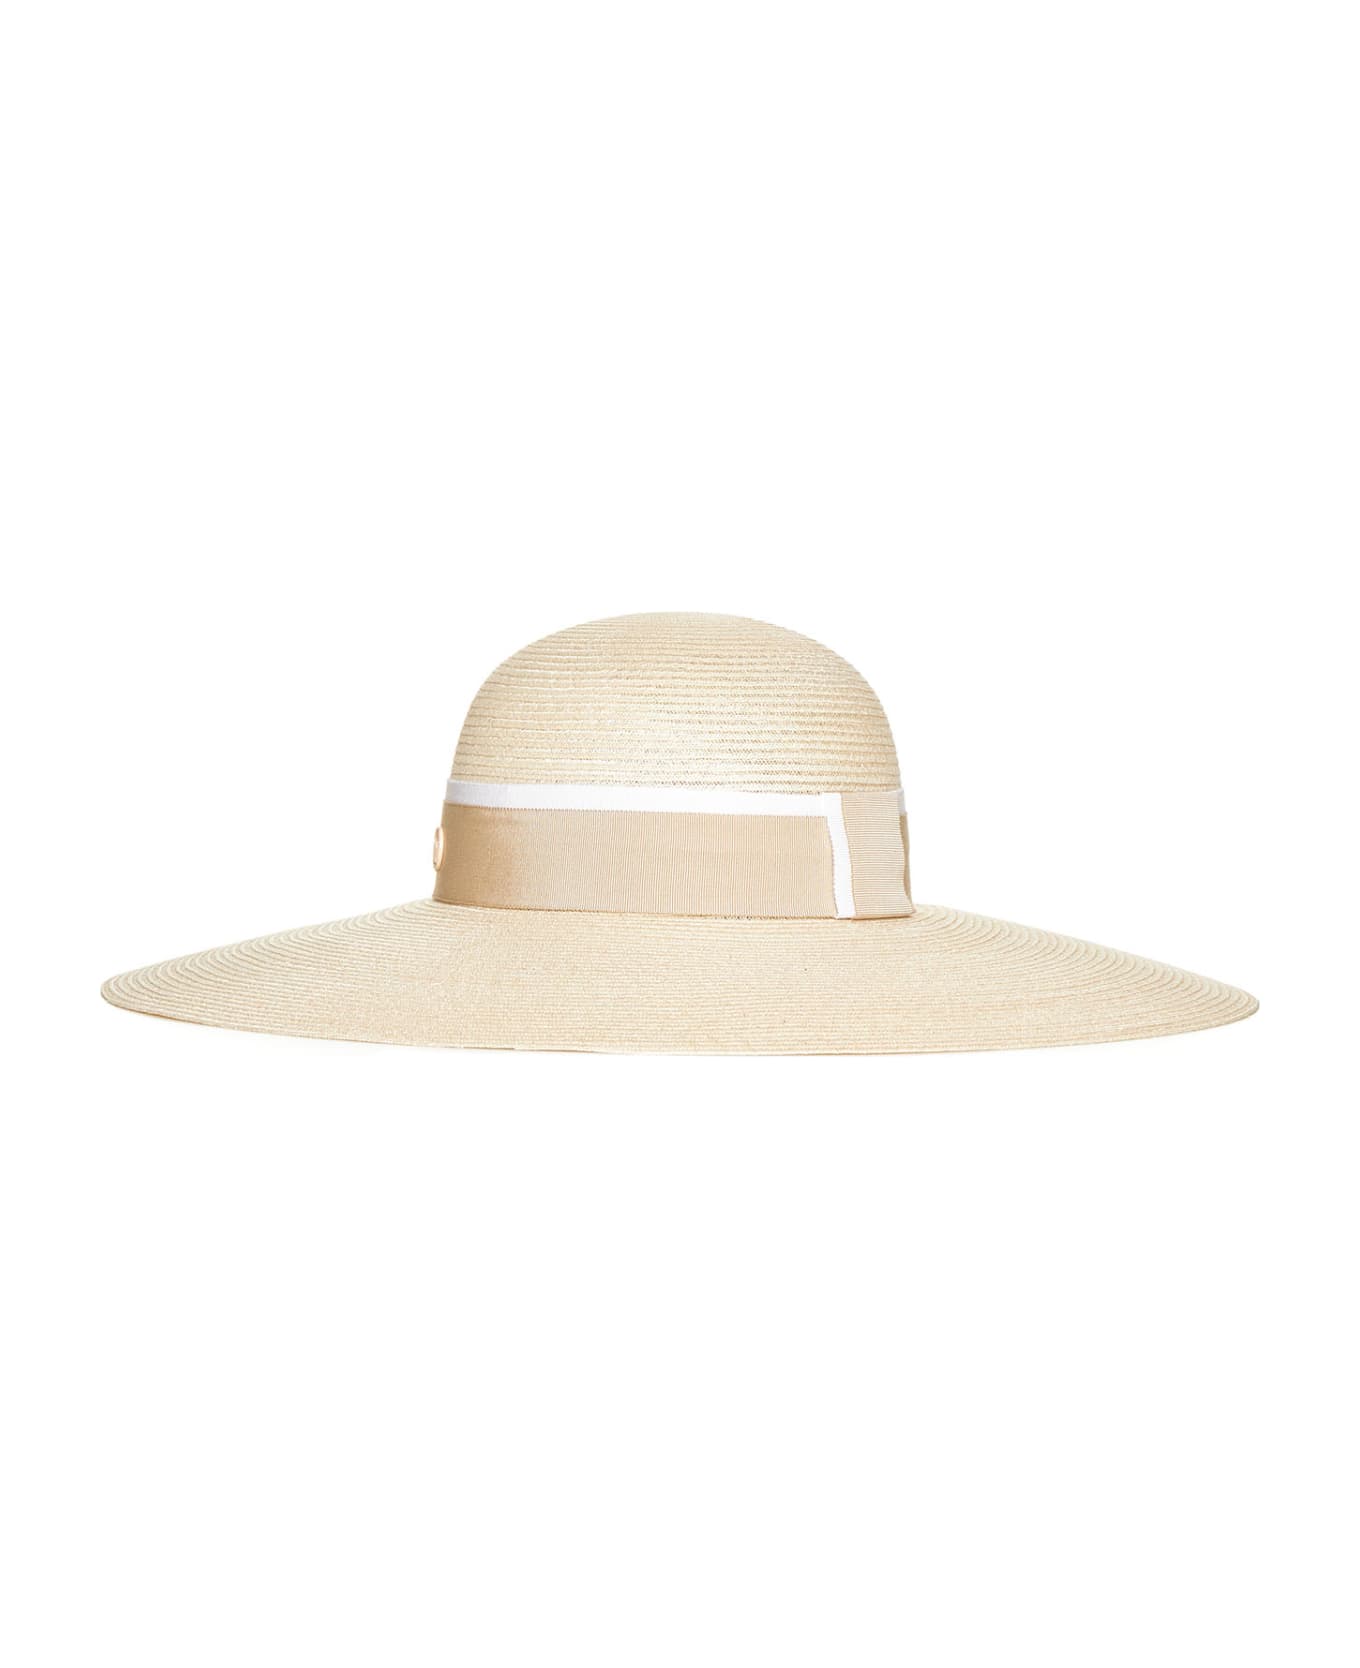 Maison Michel Hat - Natural beige 帽子